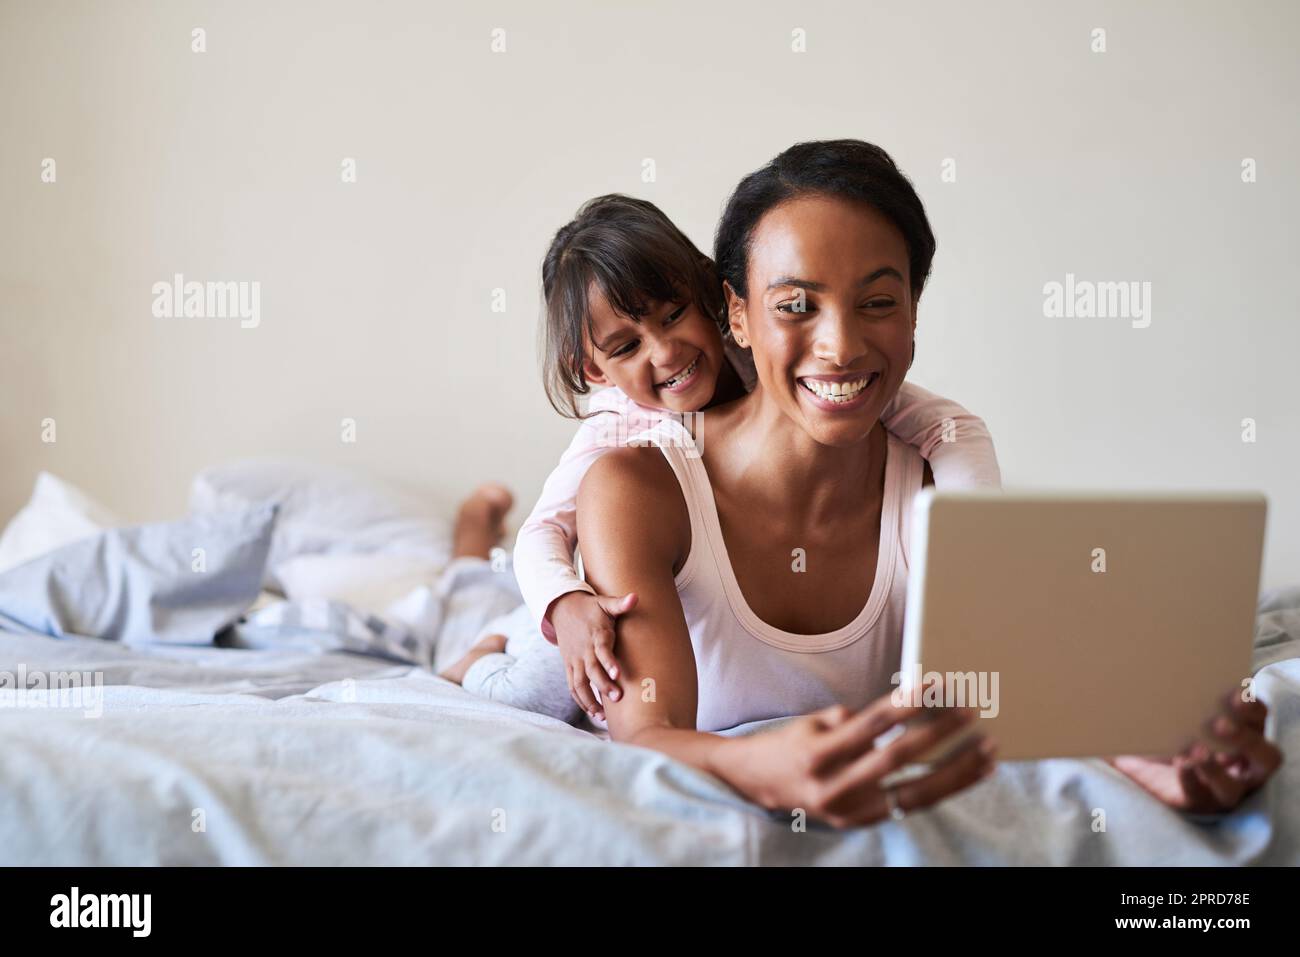 Mal sehen, was heute in der Welt im Trend ist. Eine schöne junge Mutter und Tochter mit einem digitalen Tablet, während sie sich zu Hause im Bett entspannen. Stockfoto